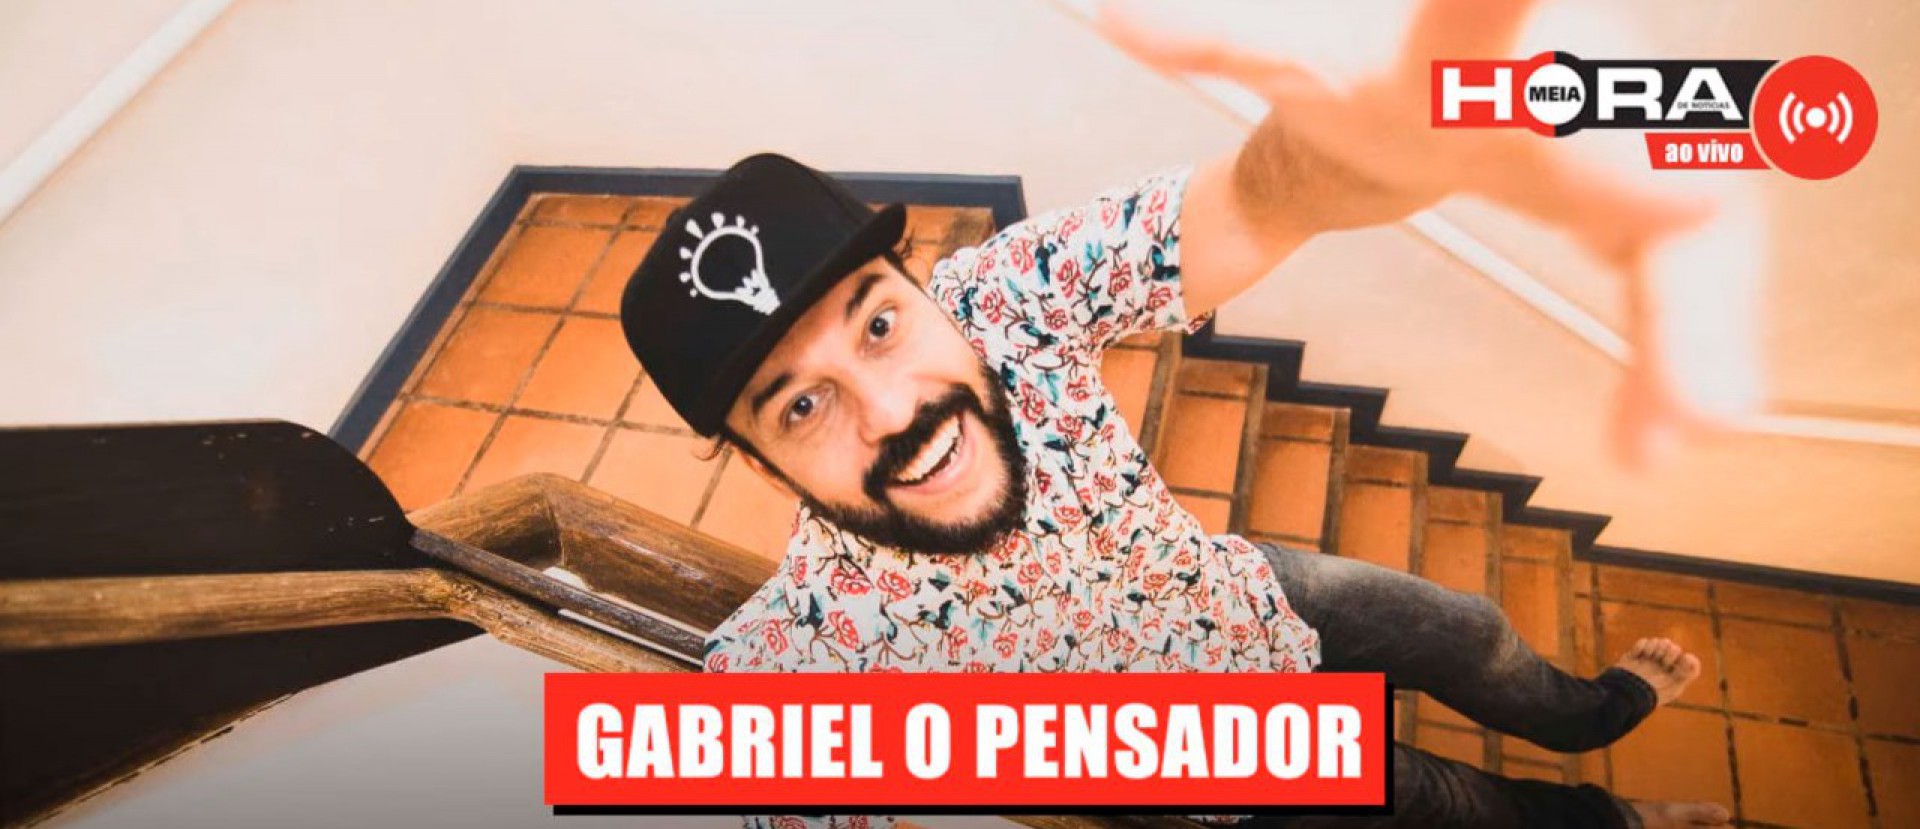 Gabriel O Pensador - Divulgação